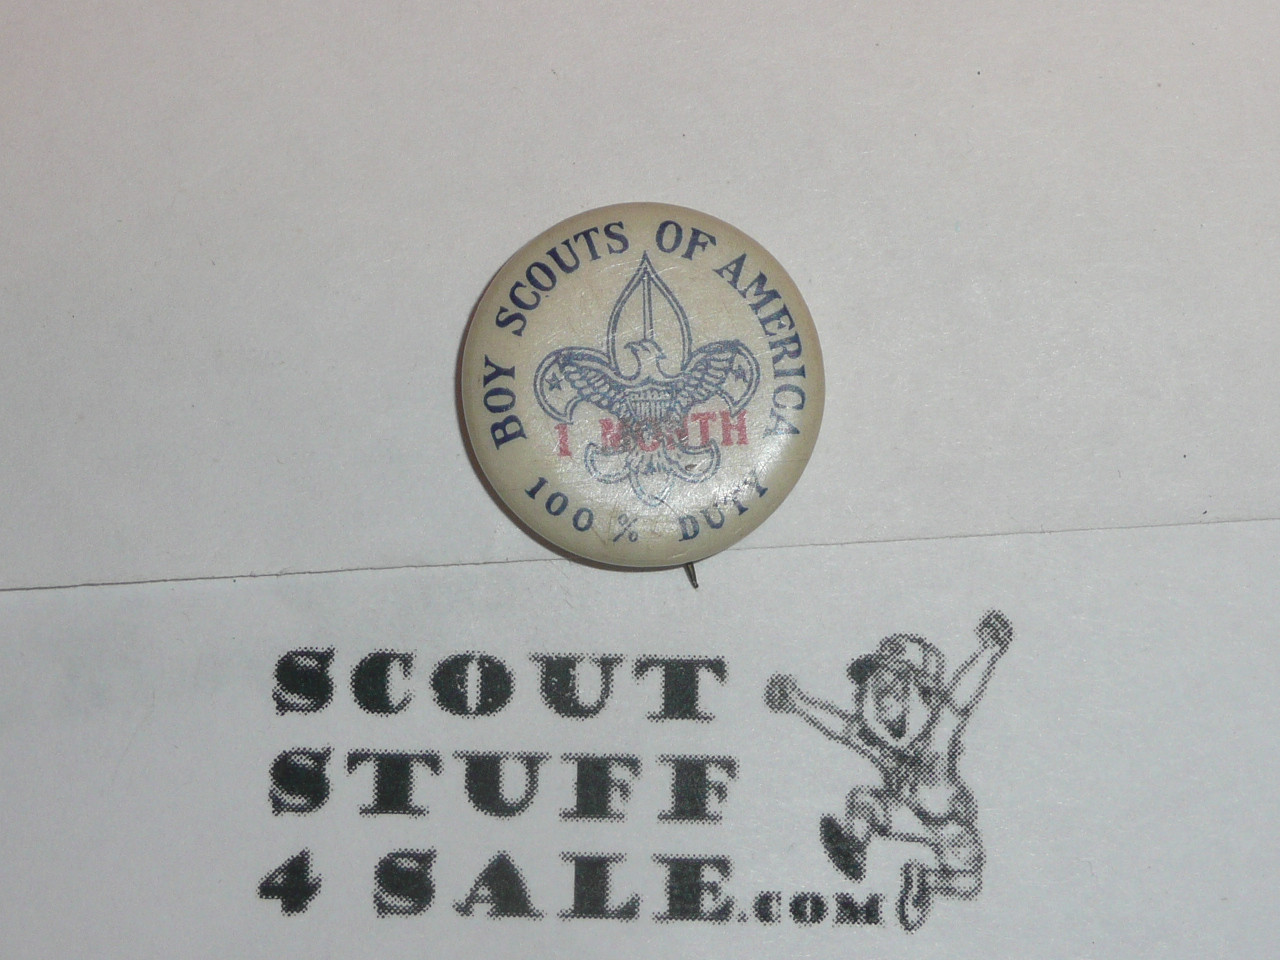 100% Duty 1 MONTH Celluloid Boy Scout Button